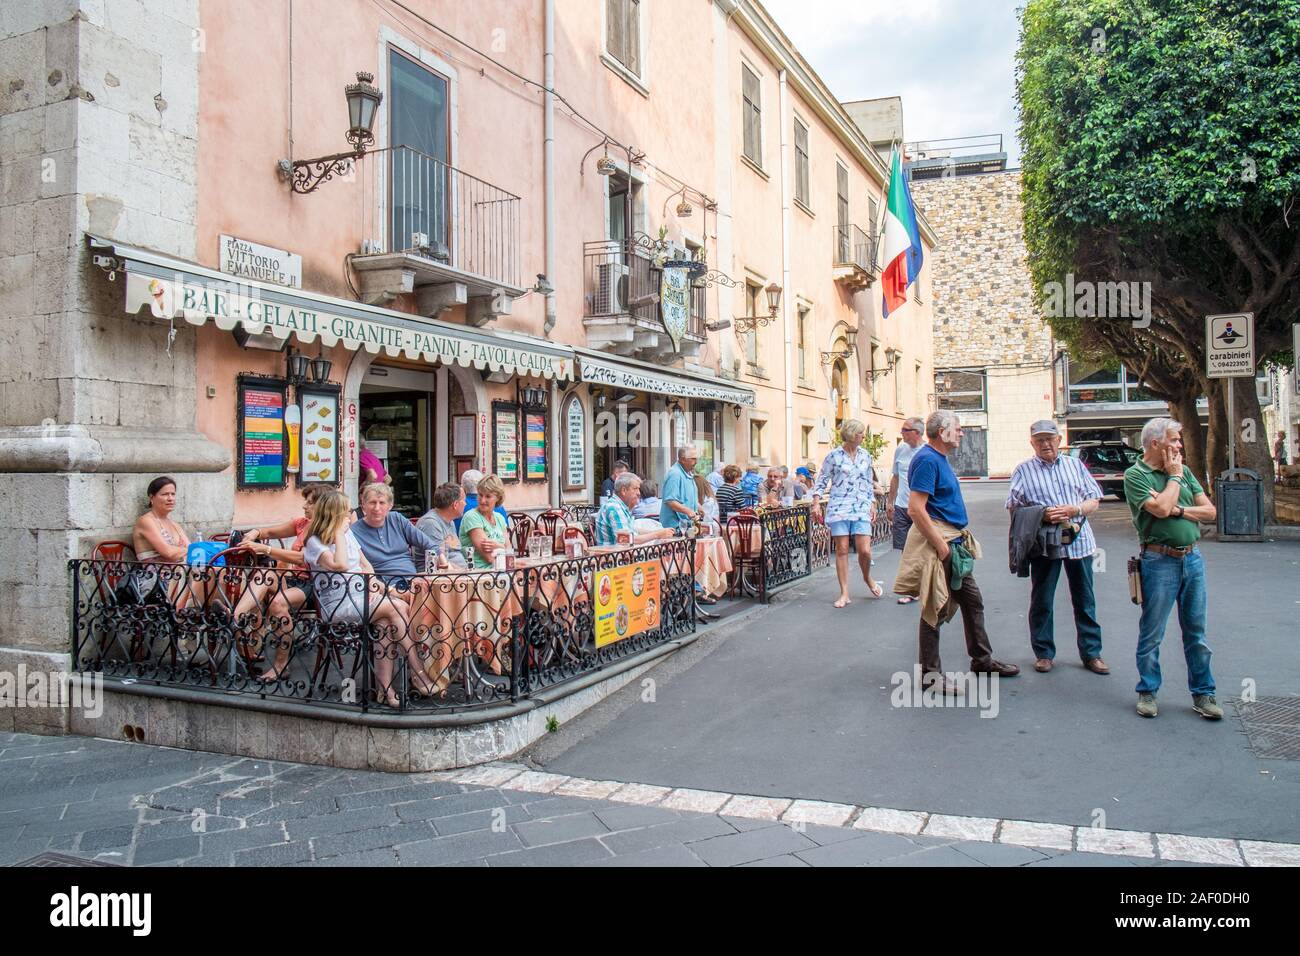 Städtische Szene von Taormina, Sizilien. Historische Taormina ist ein wichtiges touristisches Ziel in Sizilien. Stockfoto